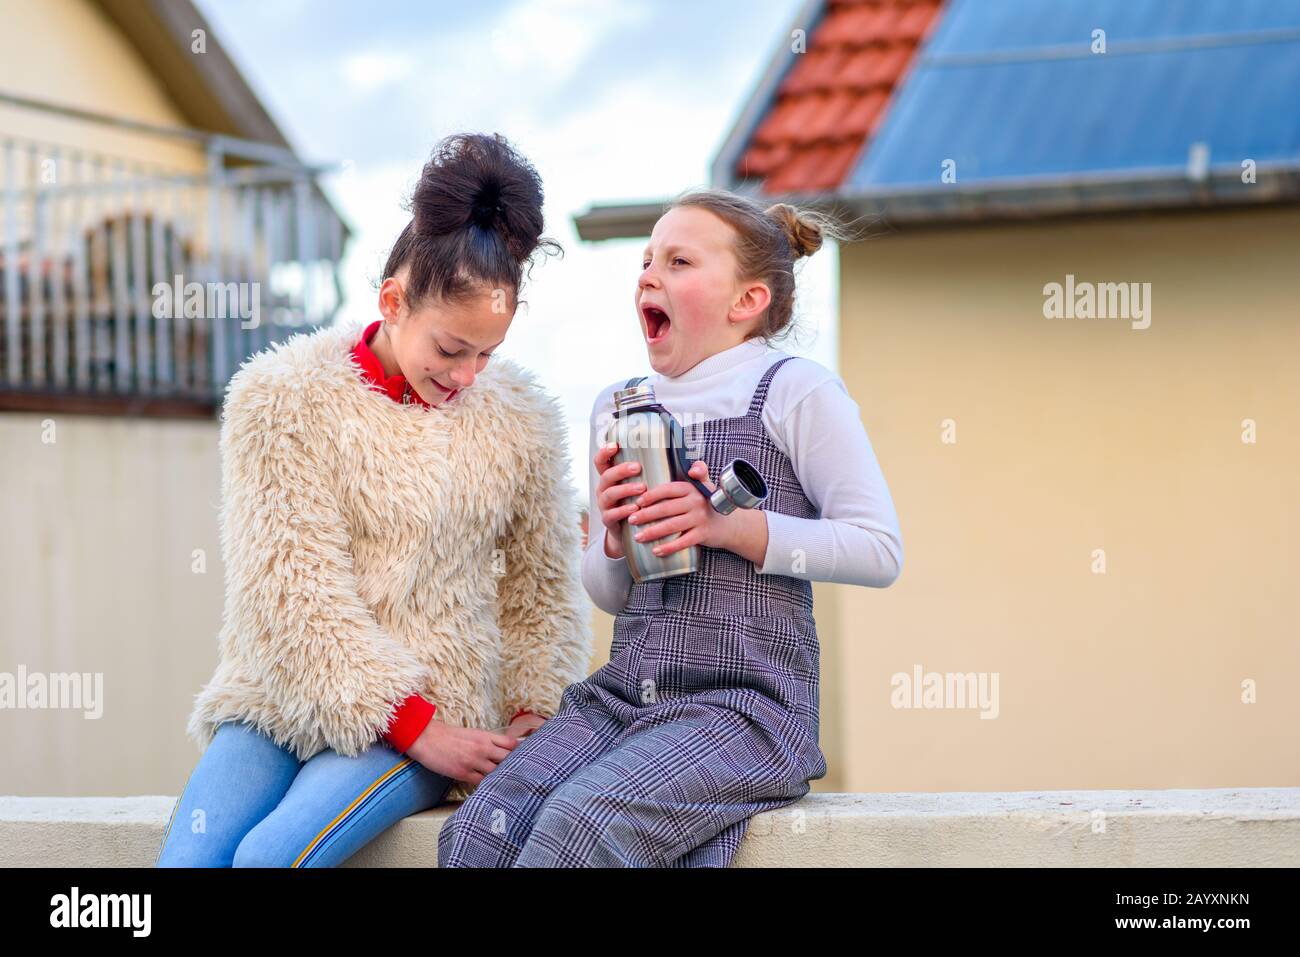 Porträt zwei Teenager mit Zittern und Gefühl kalt, mit Zähnen aus Kälte auf dem Dach der Stadt. Junges Mädchen, das wiederverwendbare Flasche mit heißem Tee hält und wegen des starken Windes und der Kälte schreit. Stockfoto